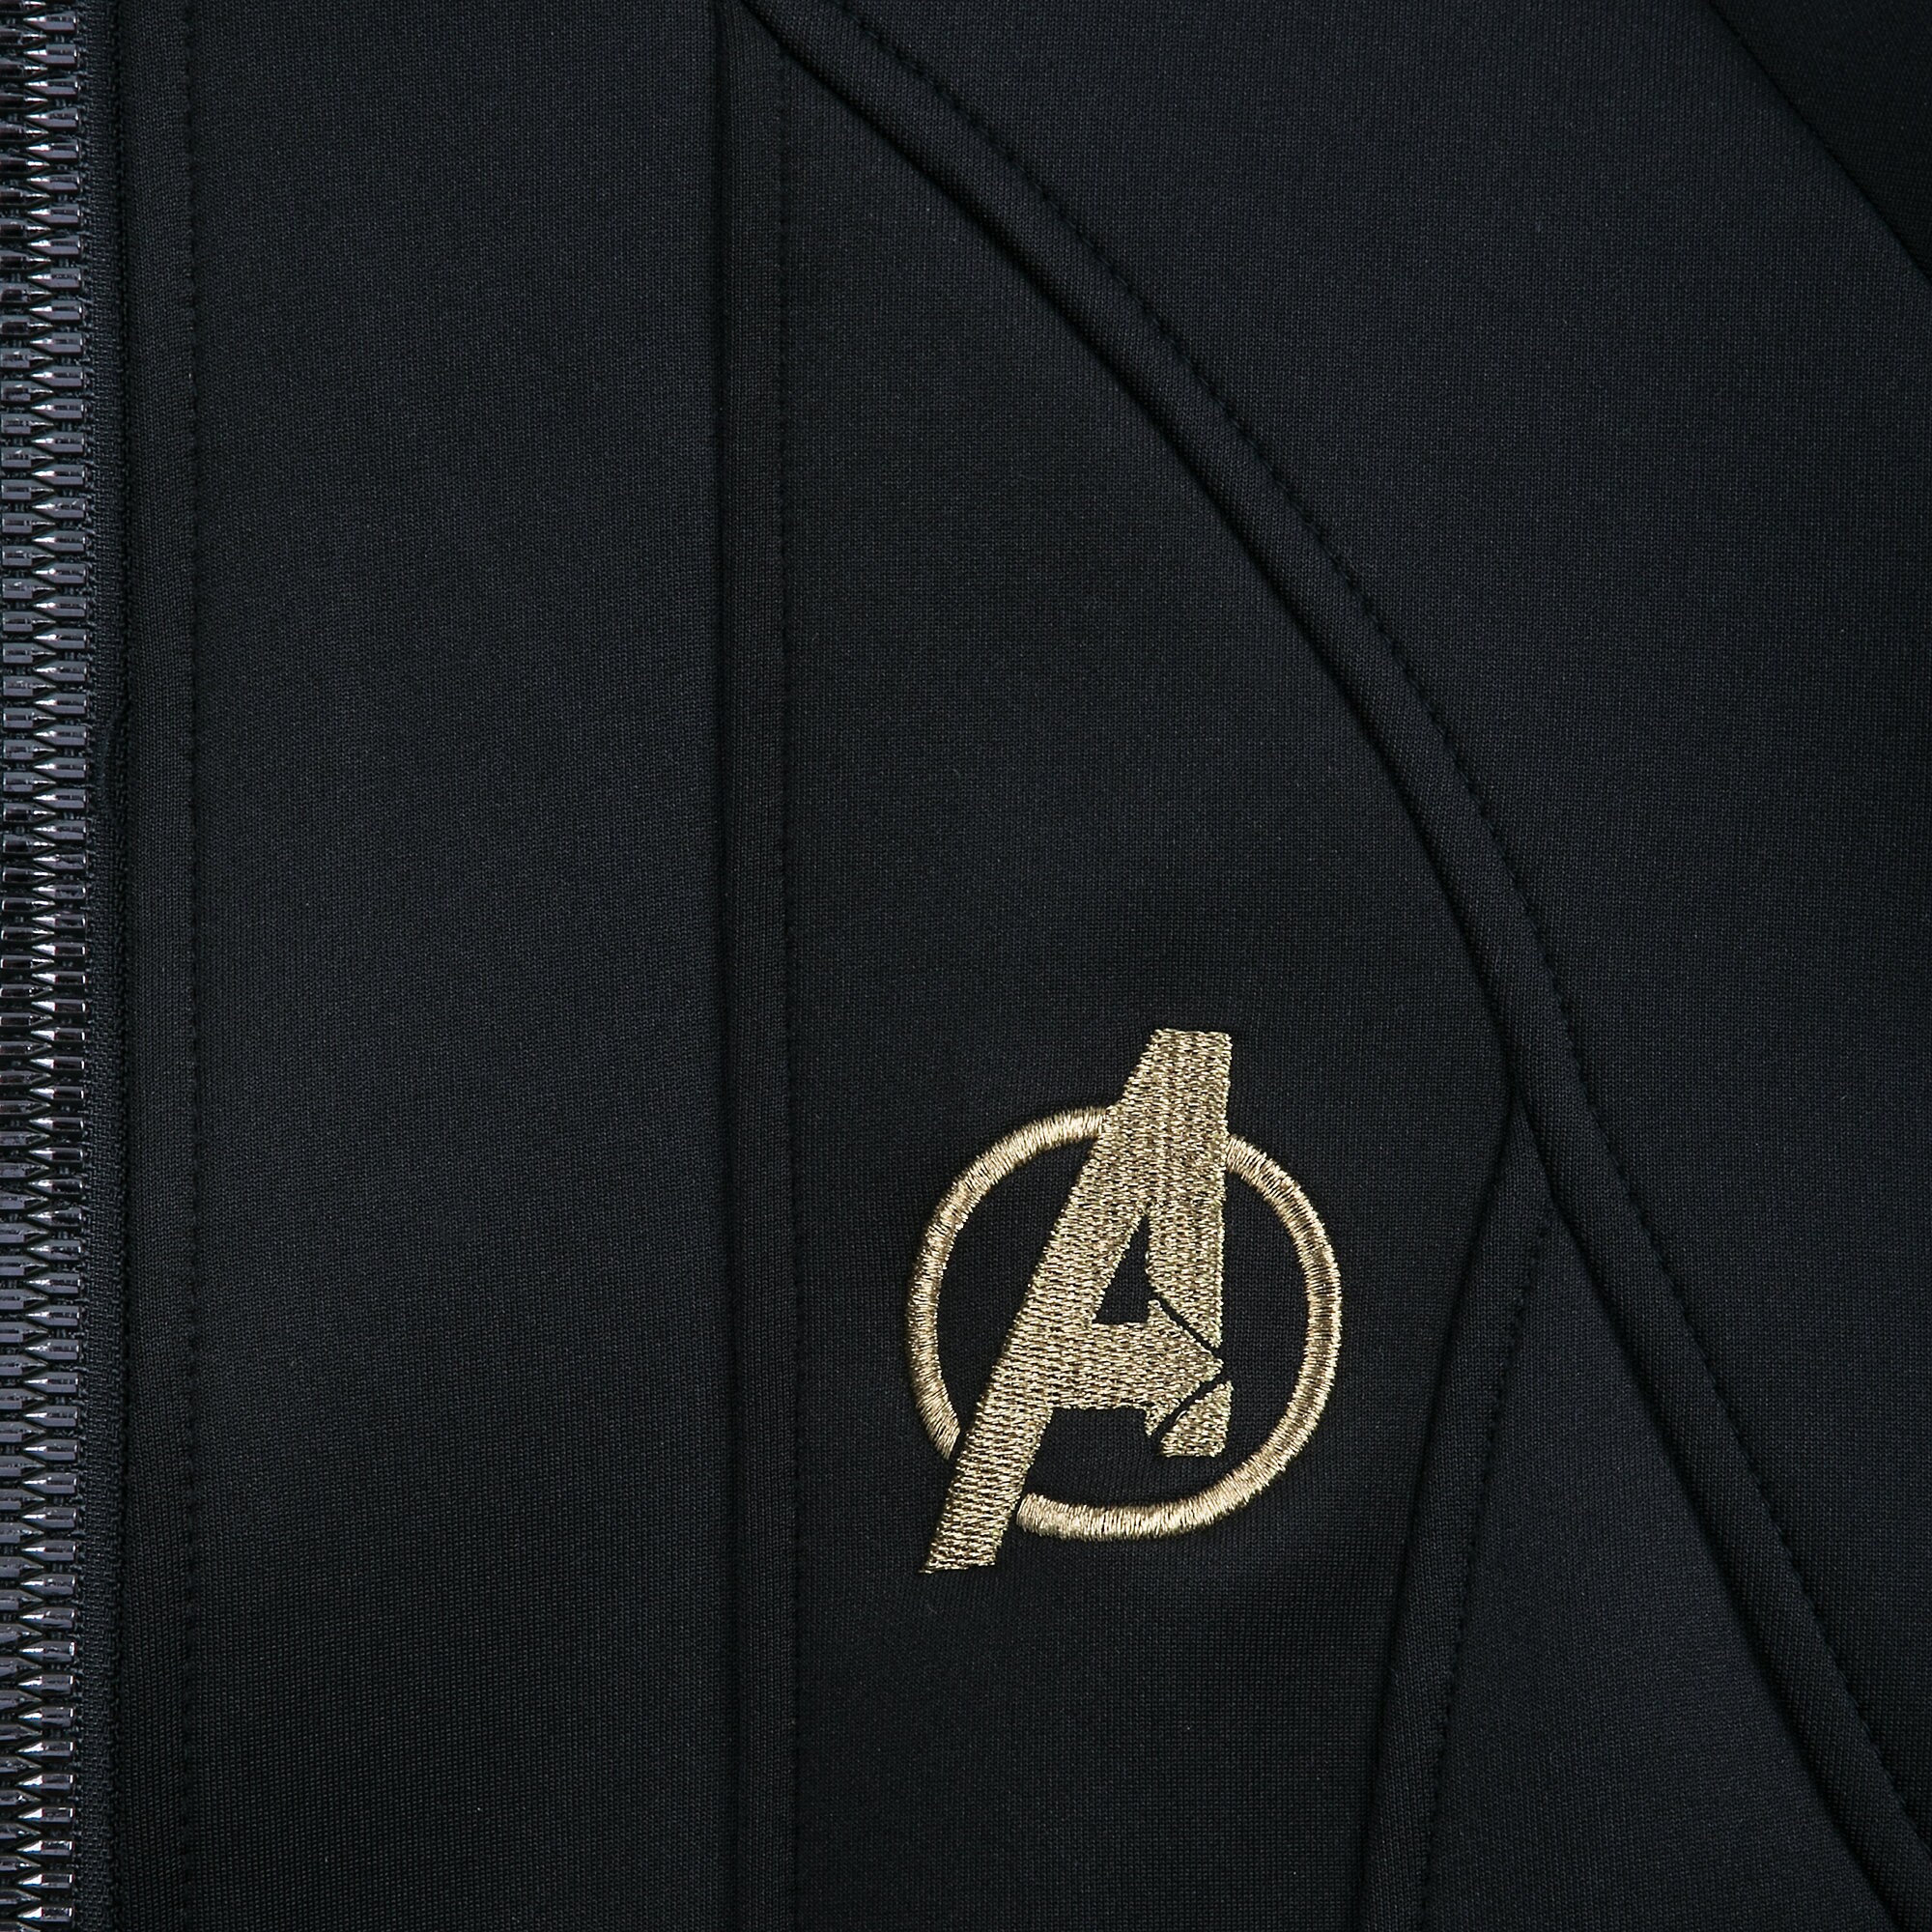 Ronin Zip Hoodie for Men - Marvel's Avengers: Endgame